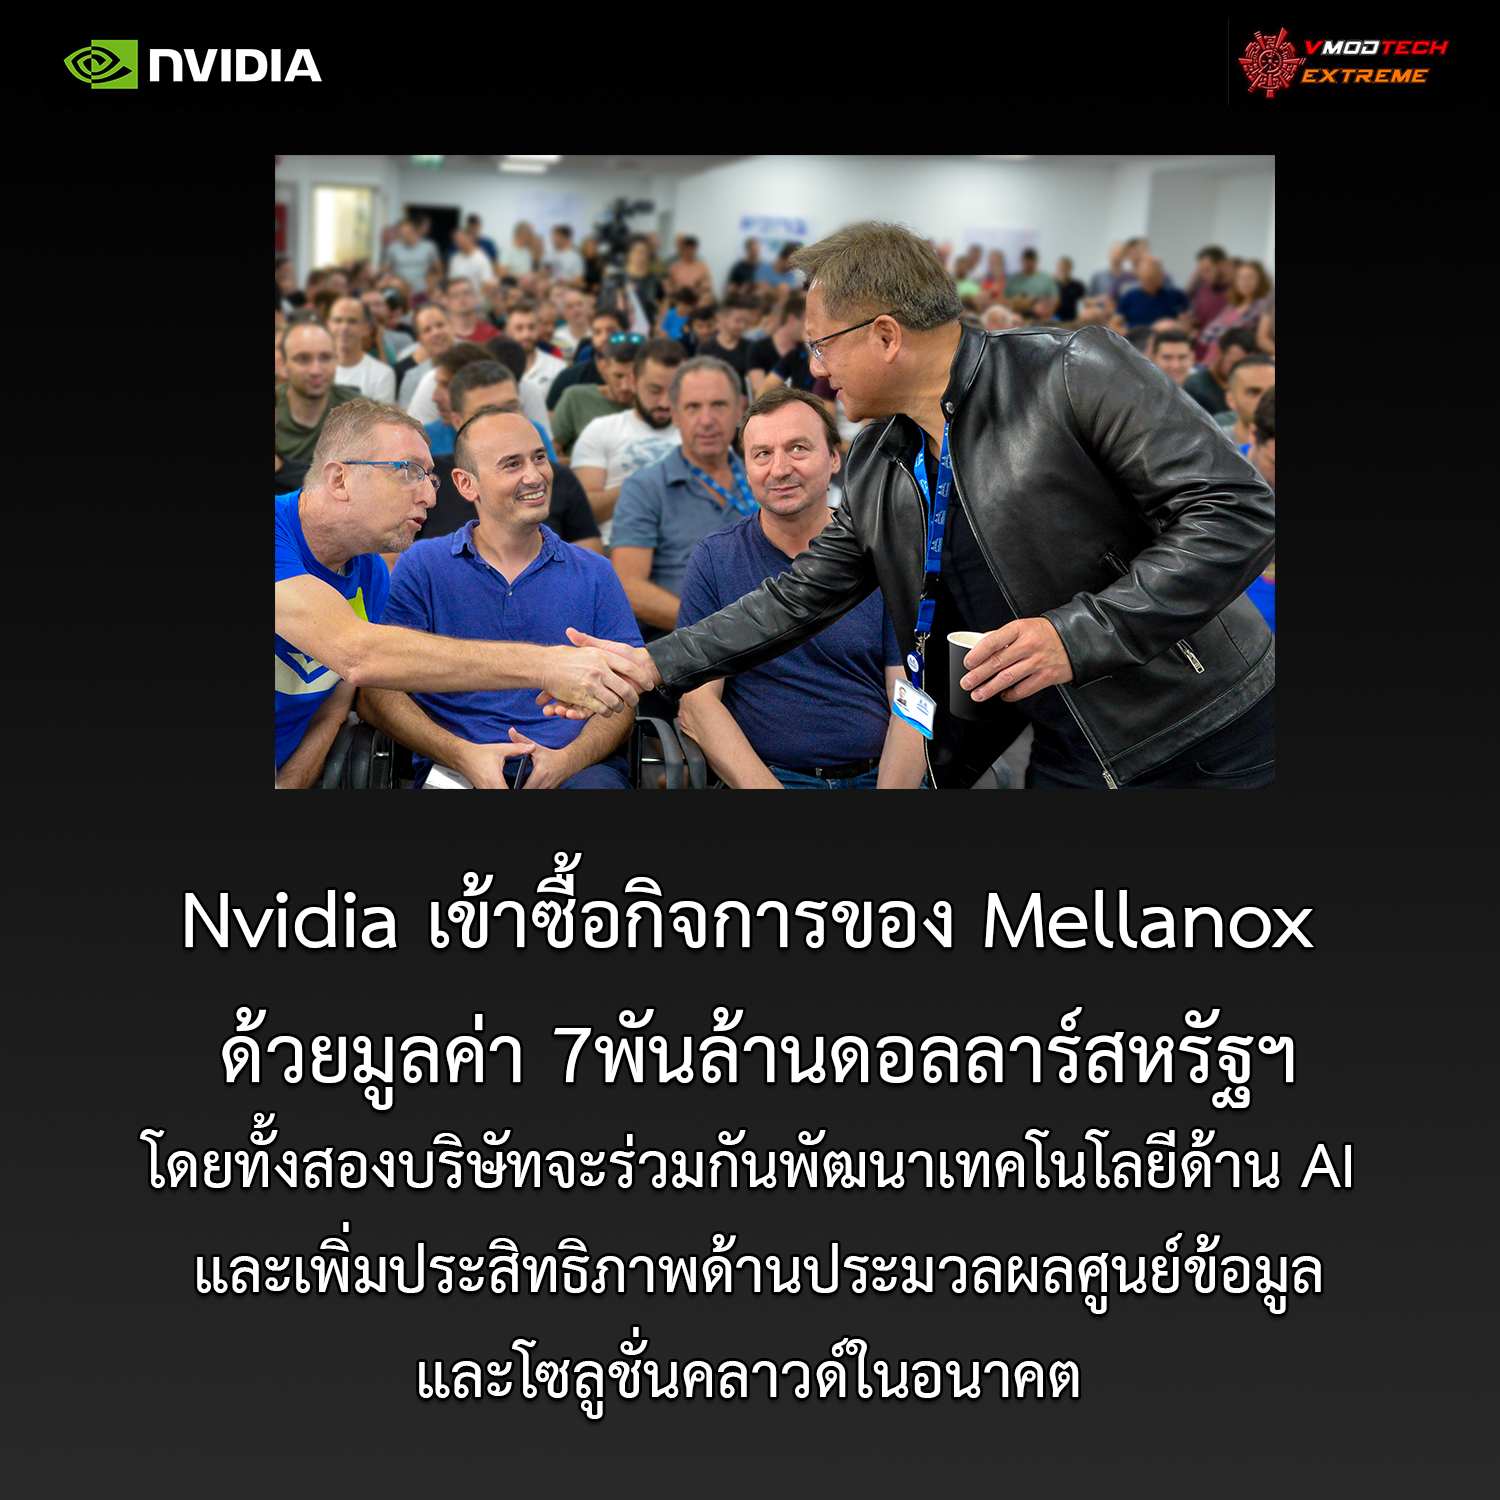 nvidia completes acquisition of mellanox Nvidia ประสบความสำเร็จในการเข้าซื้อกิจการของ Mellanox บริษัทเทคโนโลยียักษ์ใหญ่จากอิสราเอล 